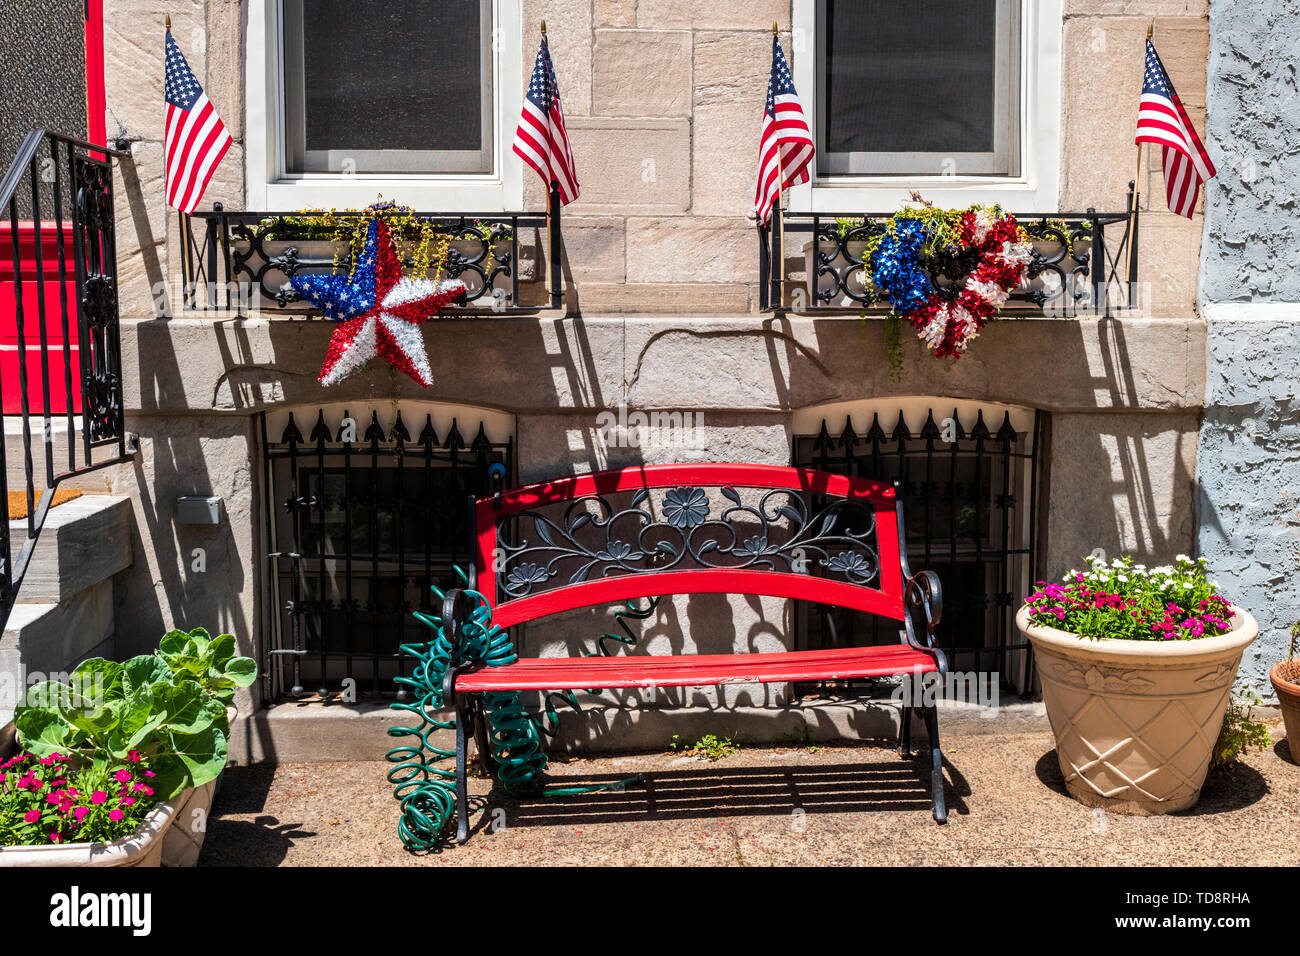 Banc de jardin avec Americana Memorial Day drapeaux & décorations ; Philadelphia ; New York ; États-Unis d'Amérique Banque D'Images